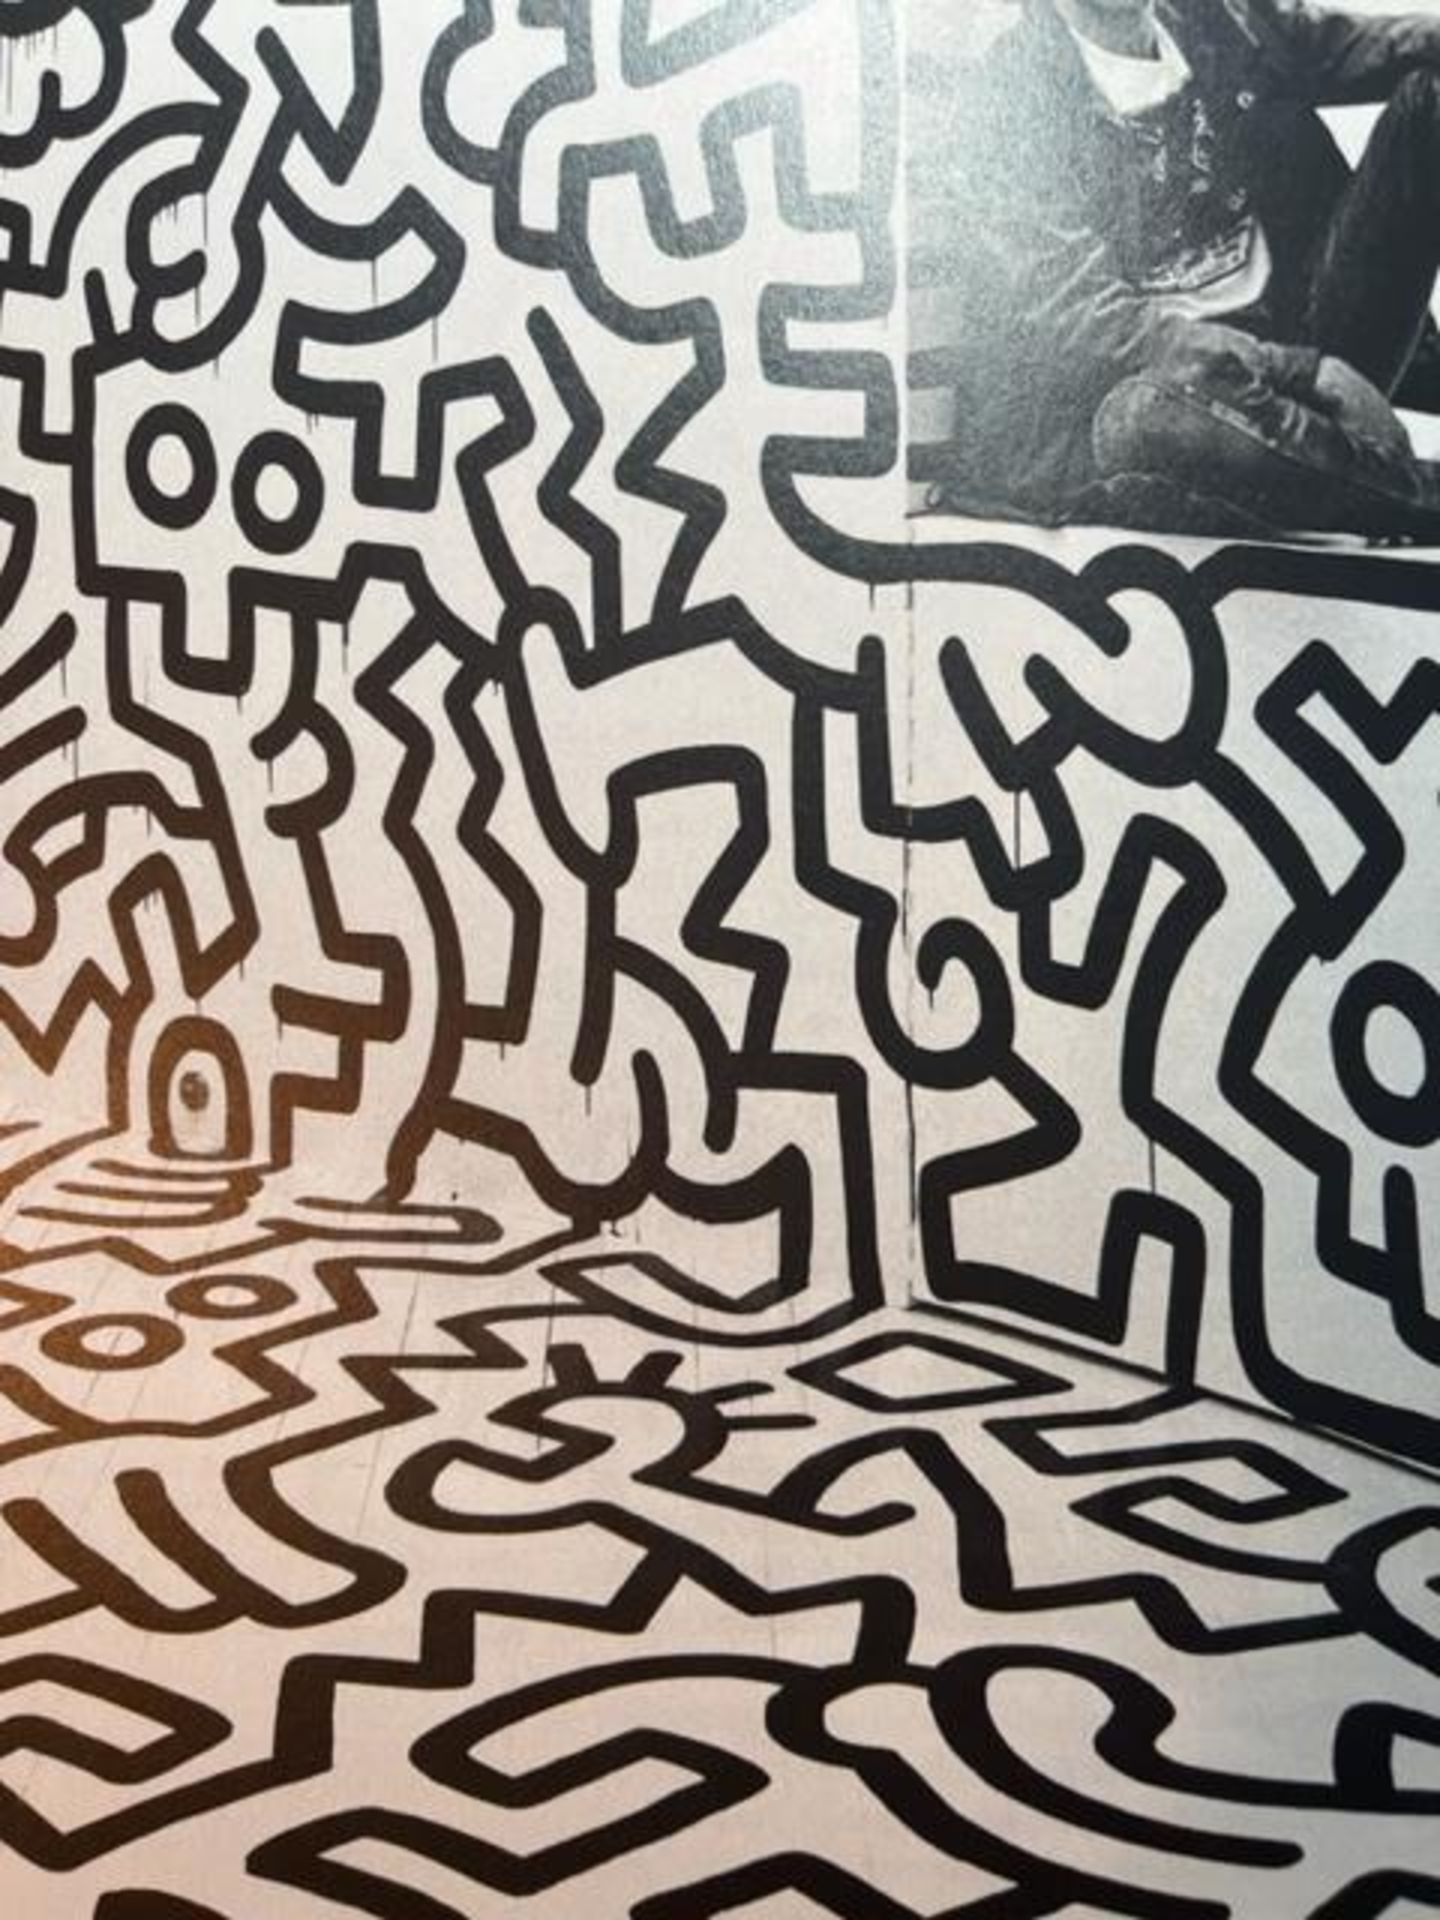 Keith Haring "Pop Shop" Print. - Bild 4 aus 6